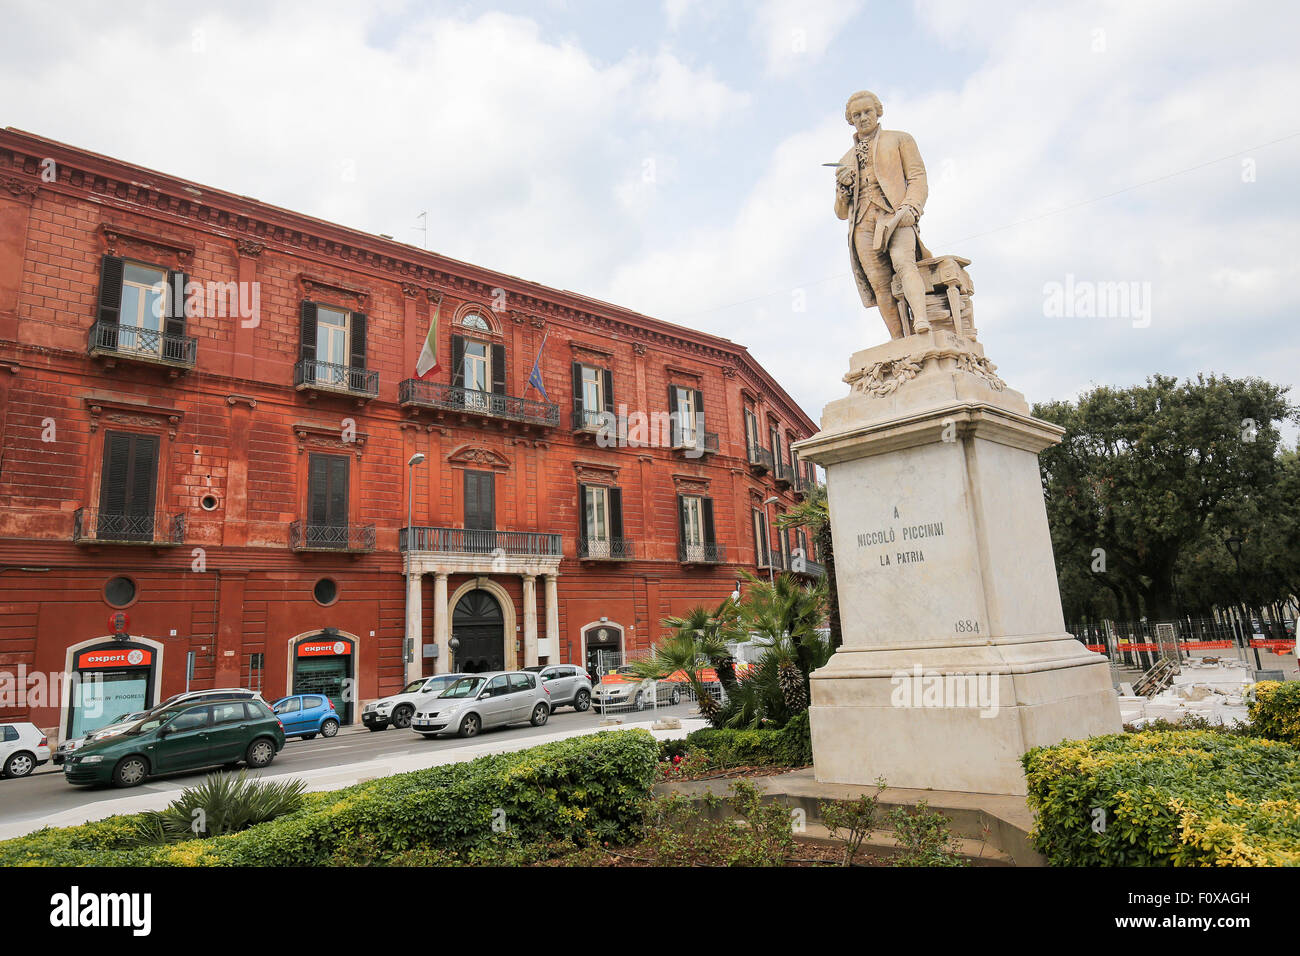 BARI, Italia - 16 Marzo 2015: Statua del xviii secolo compositore italiano Niccolò Piccinni al Teatro Piccinni di Bari, Italia Foto Stock